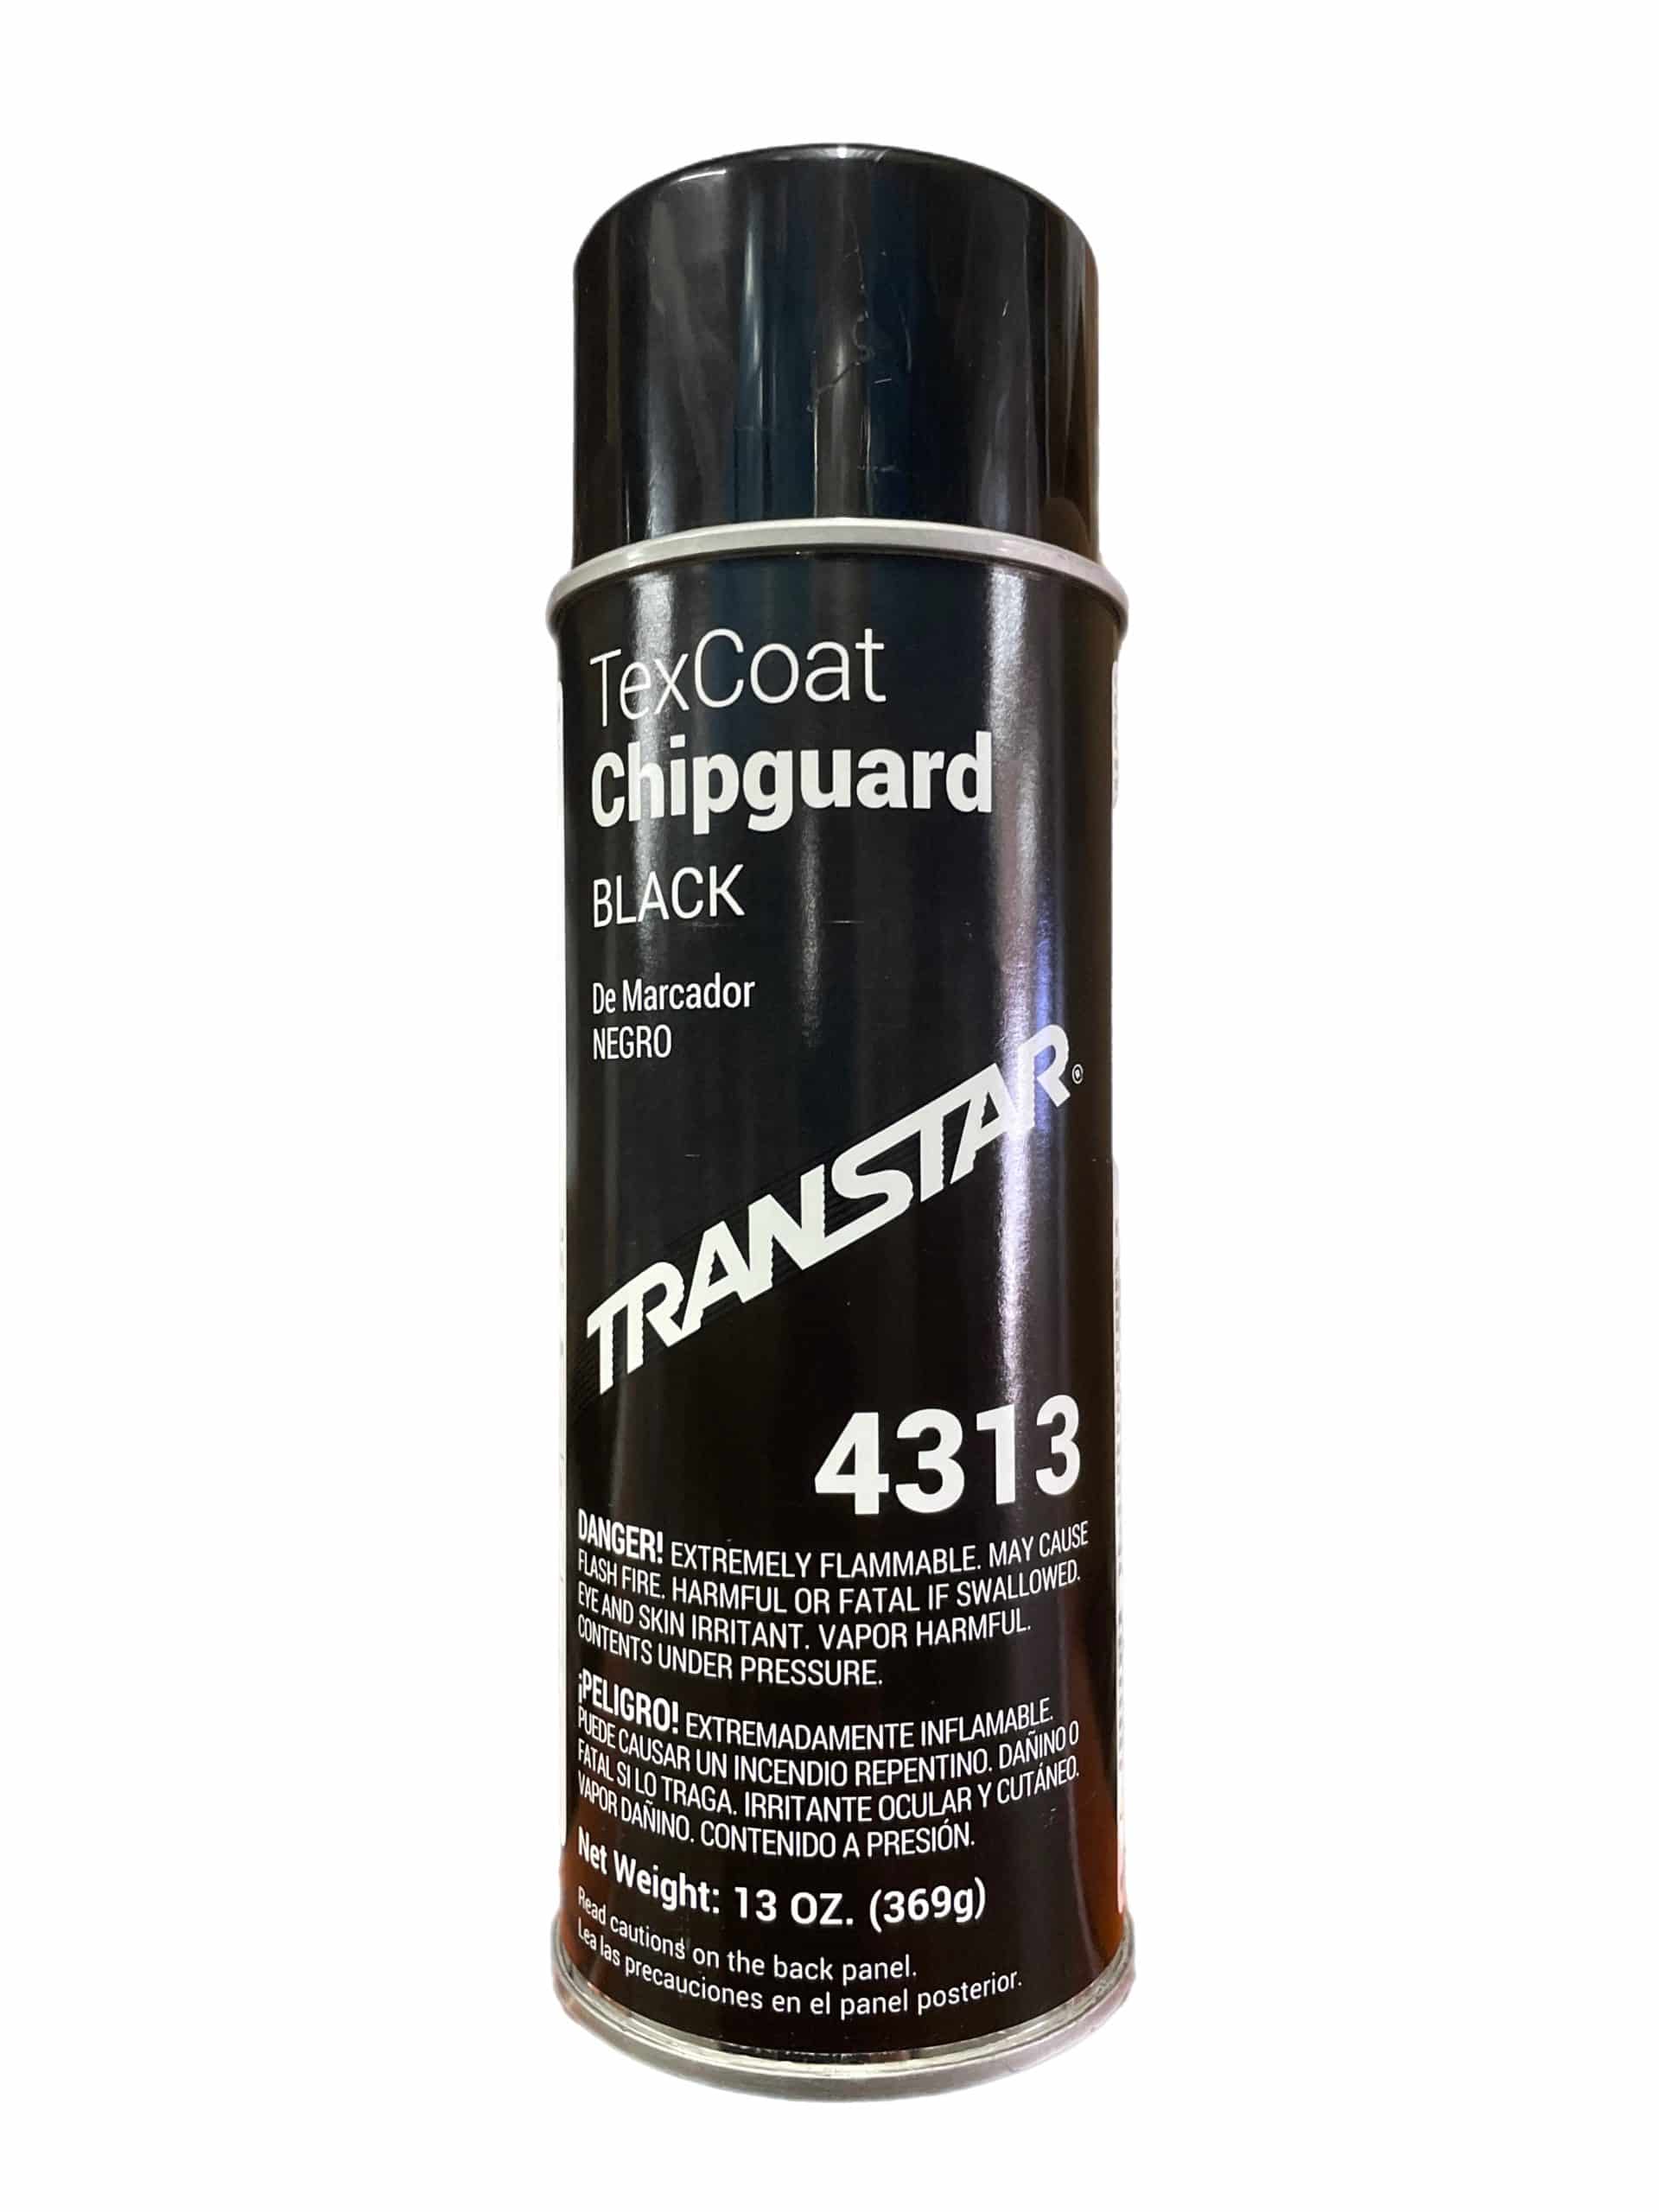 TRANSTAR TEX COAT BLACK CHIPGUARD SPRAY | Framar Online